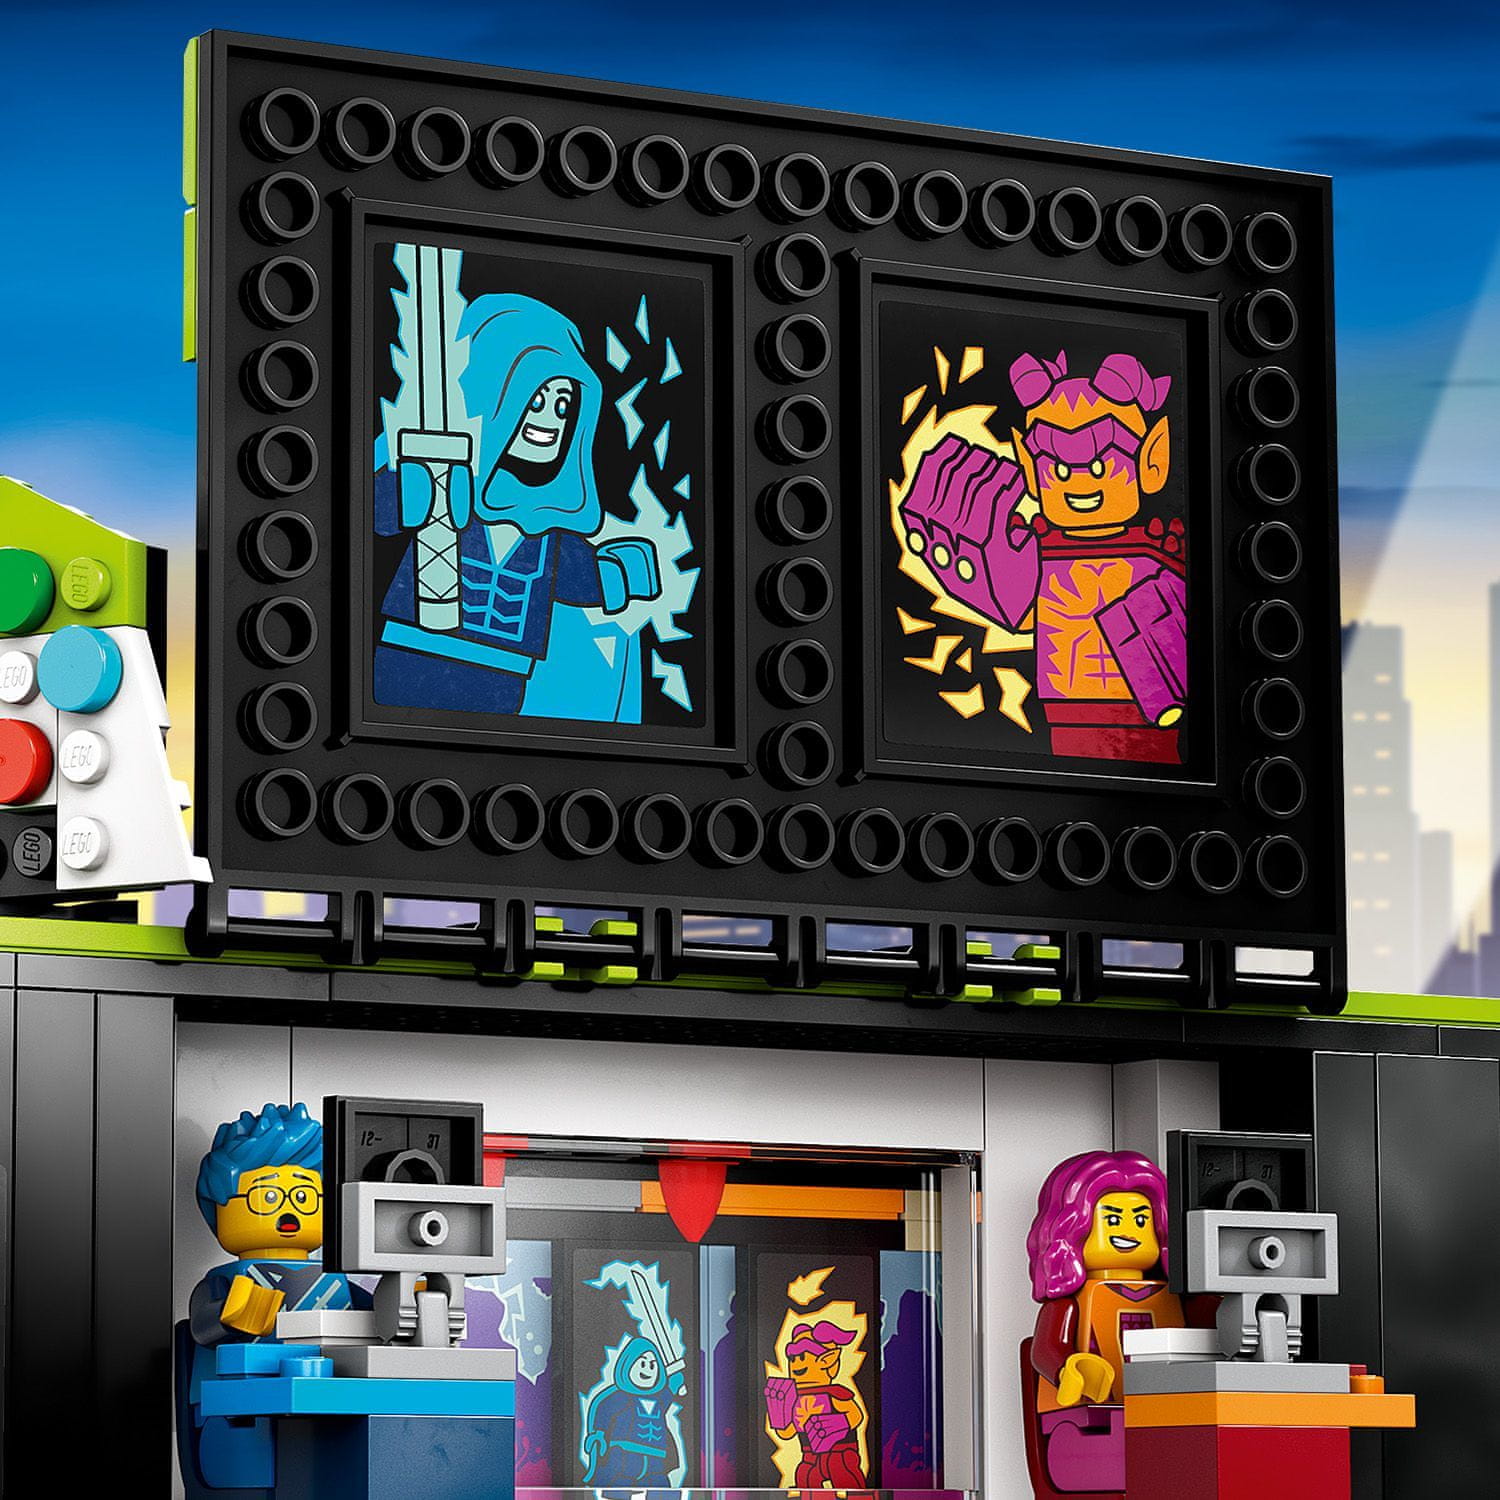 LEGO City 60388 Herný turnaj v kamióne